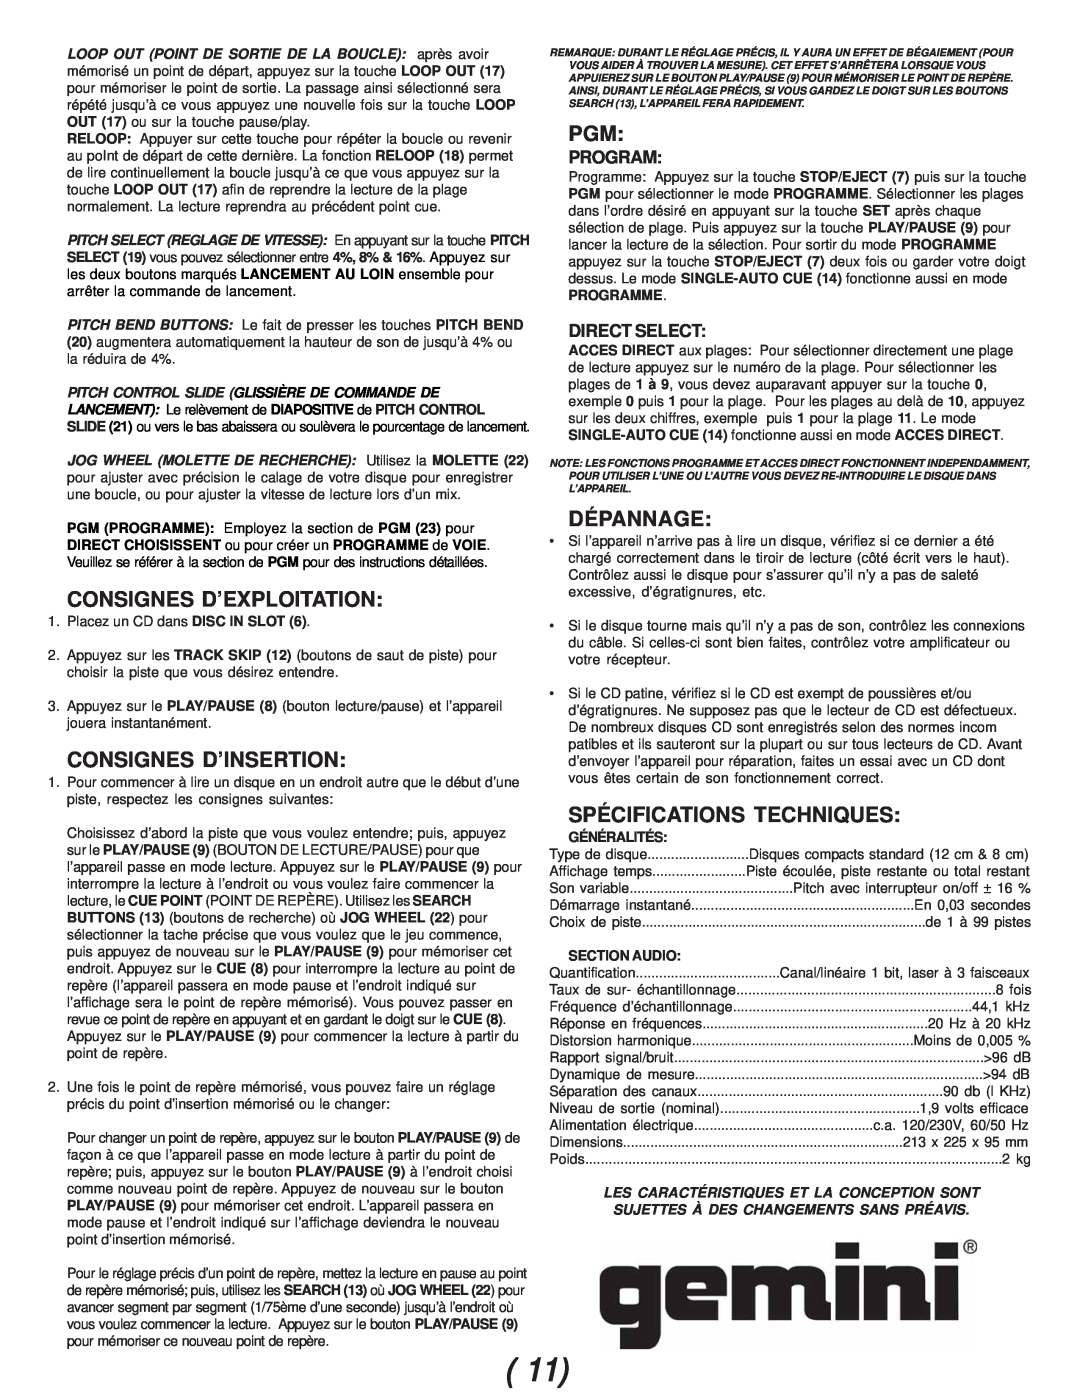 Gemini CDJ-02 manual Consignes D’Exploitation, Consignes D’Insertion, Dépannage, Spécifications Techniques, Programme 